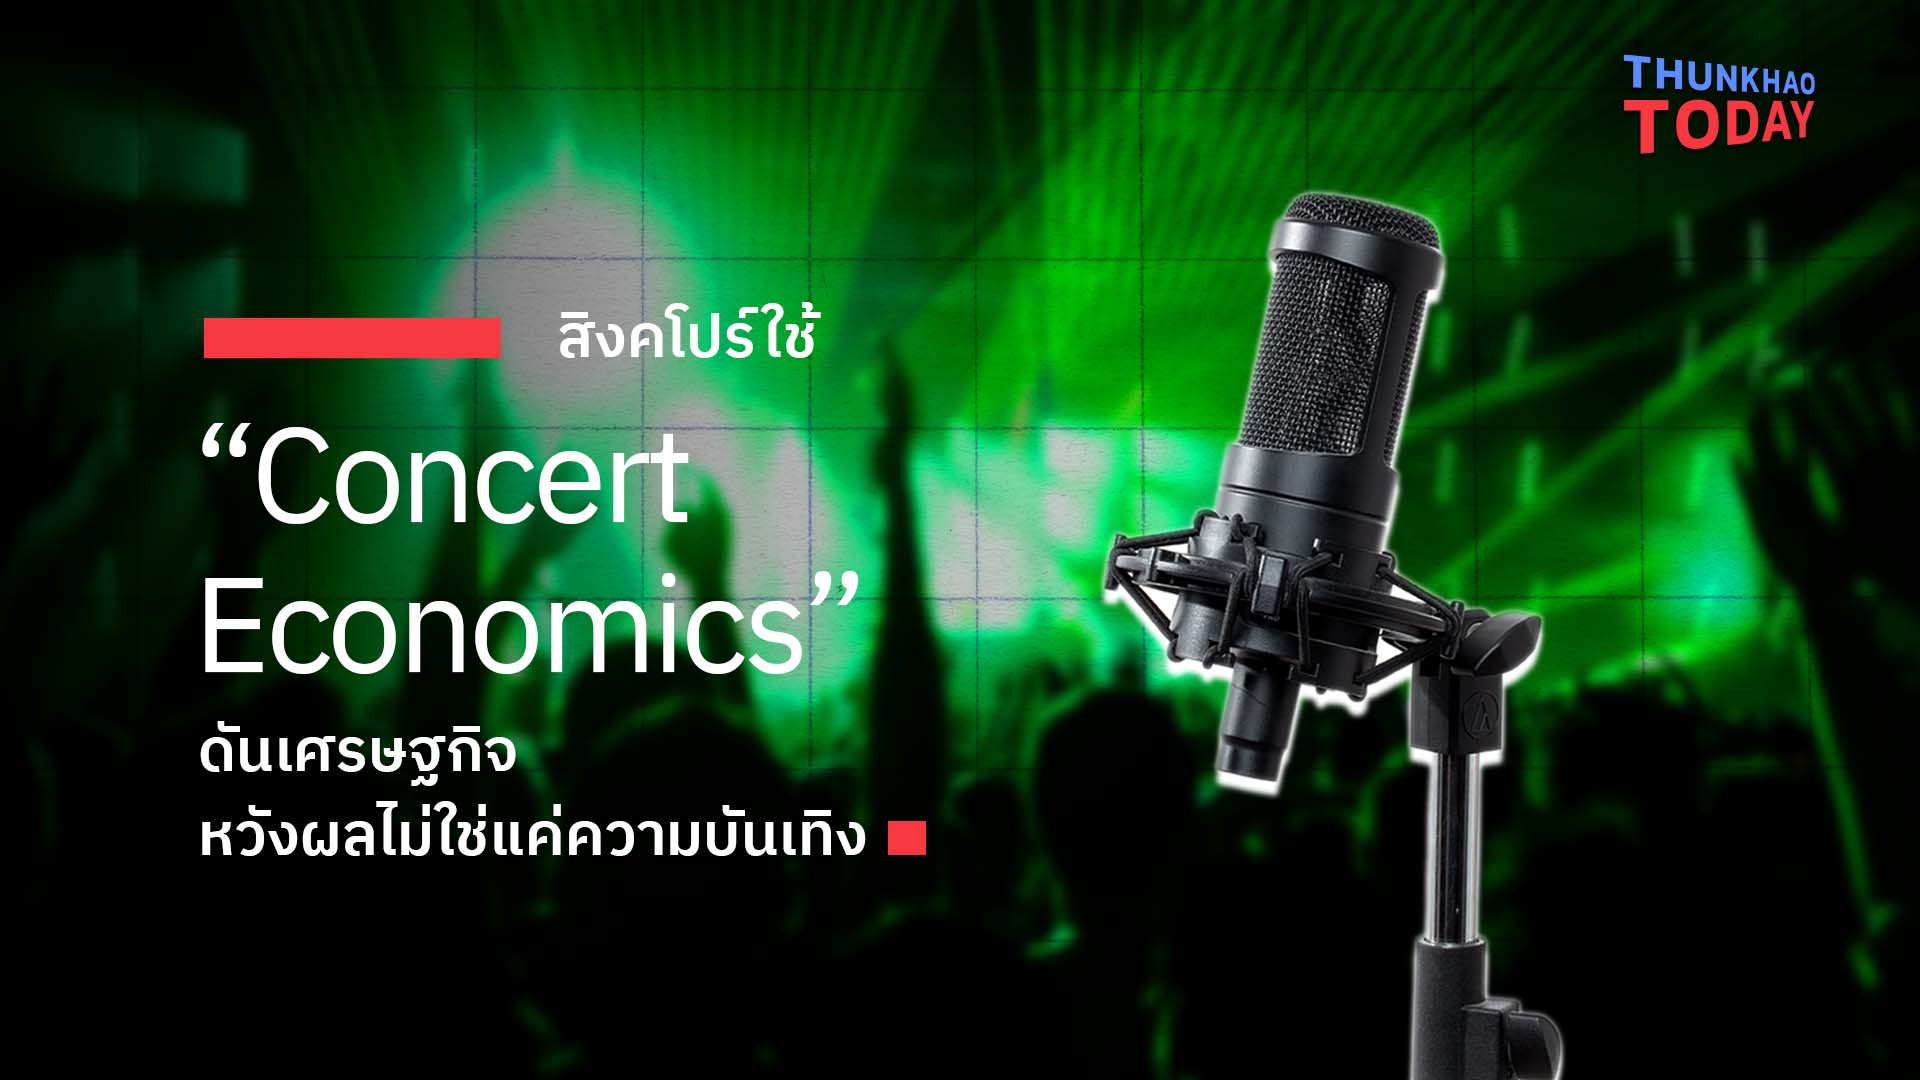 “สิงคโปร์ใช้ “Concert Economics” ดันเศรษฐกิจ หวังผลไม่ใช่แค่ความบันเทิง